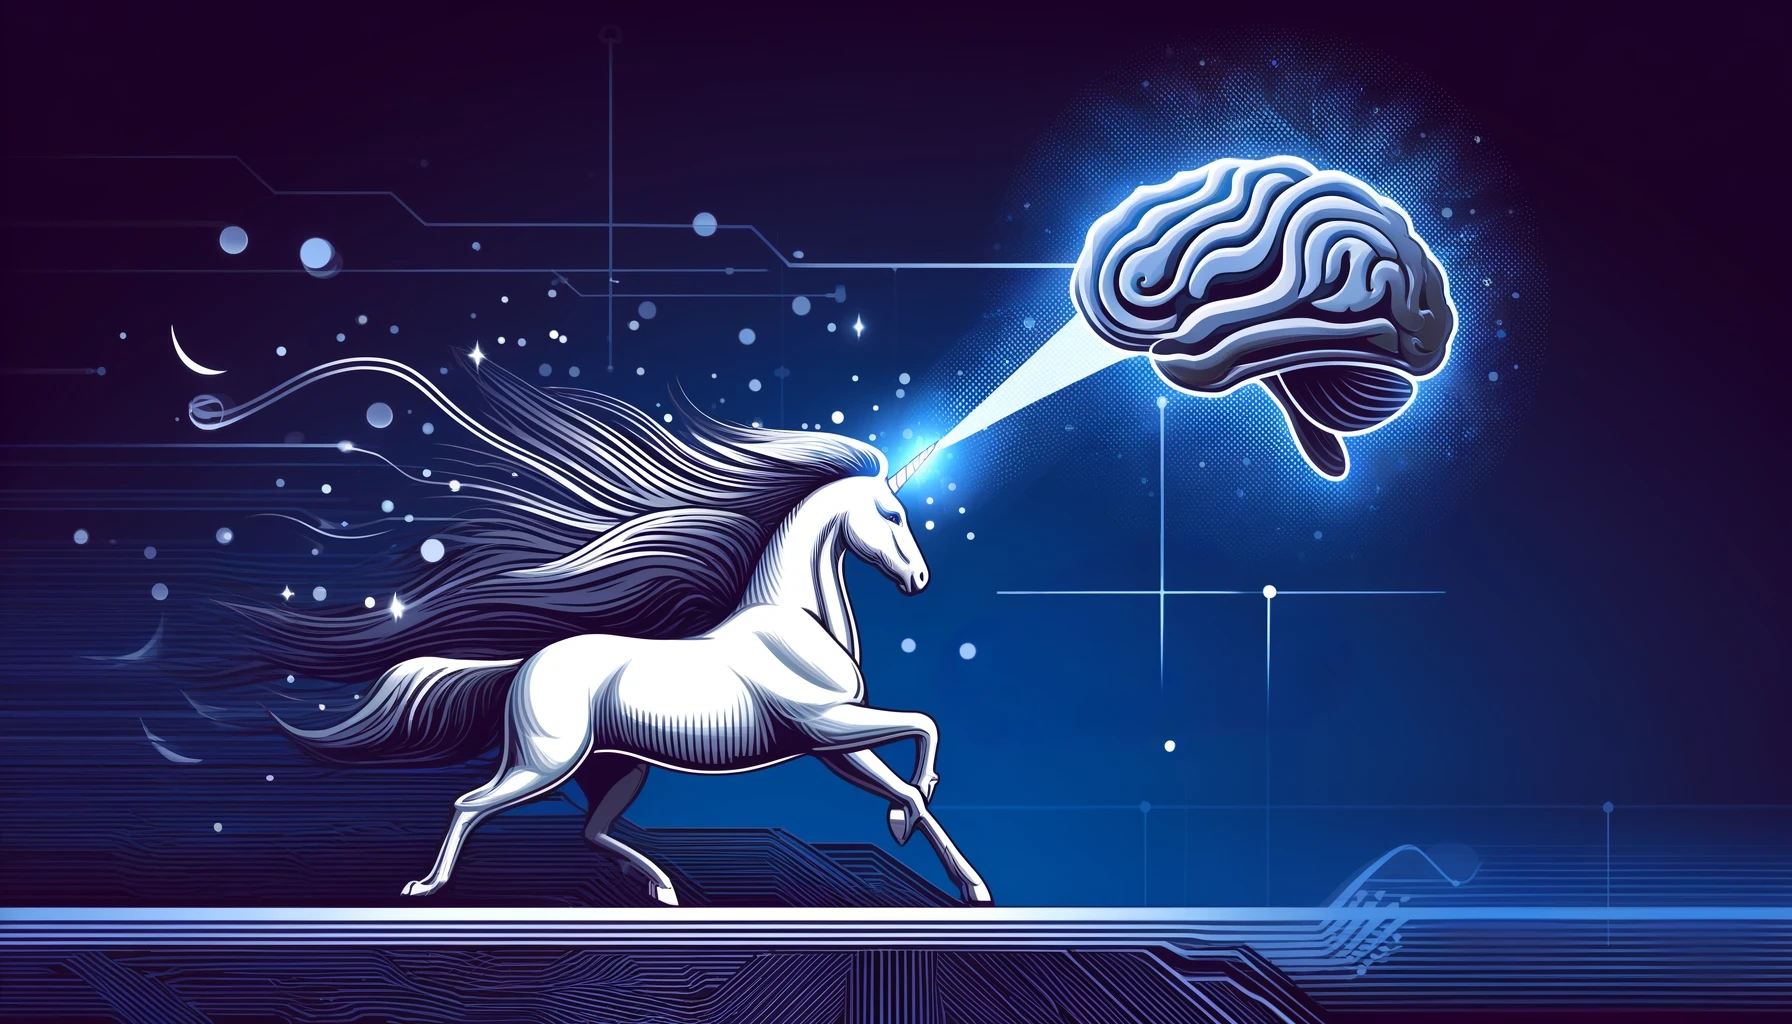 Apprenticeship unicorn Multiverse acquires Searchlight to spotlight AI.